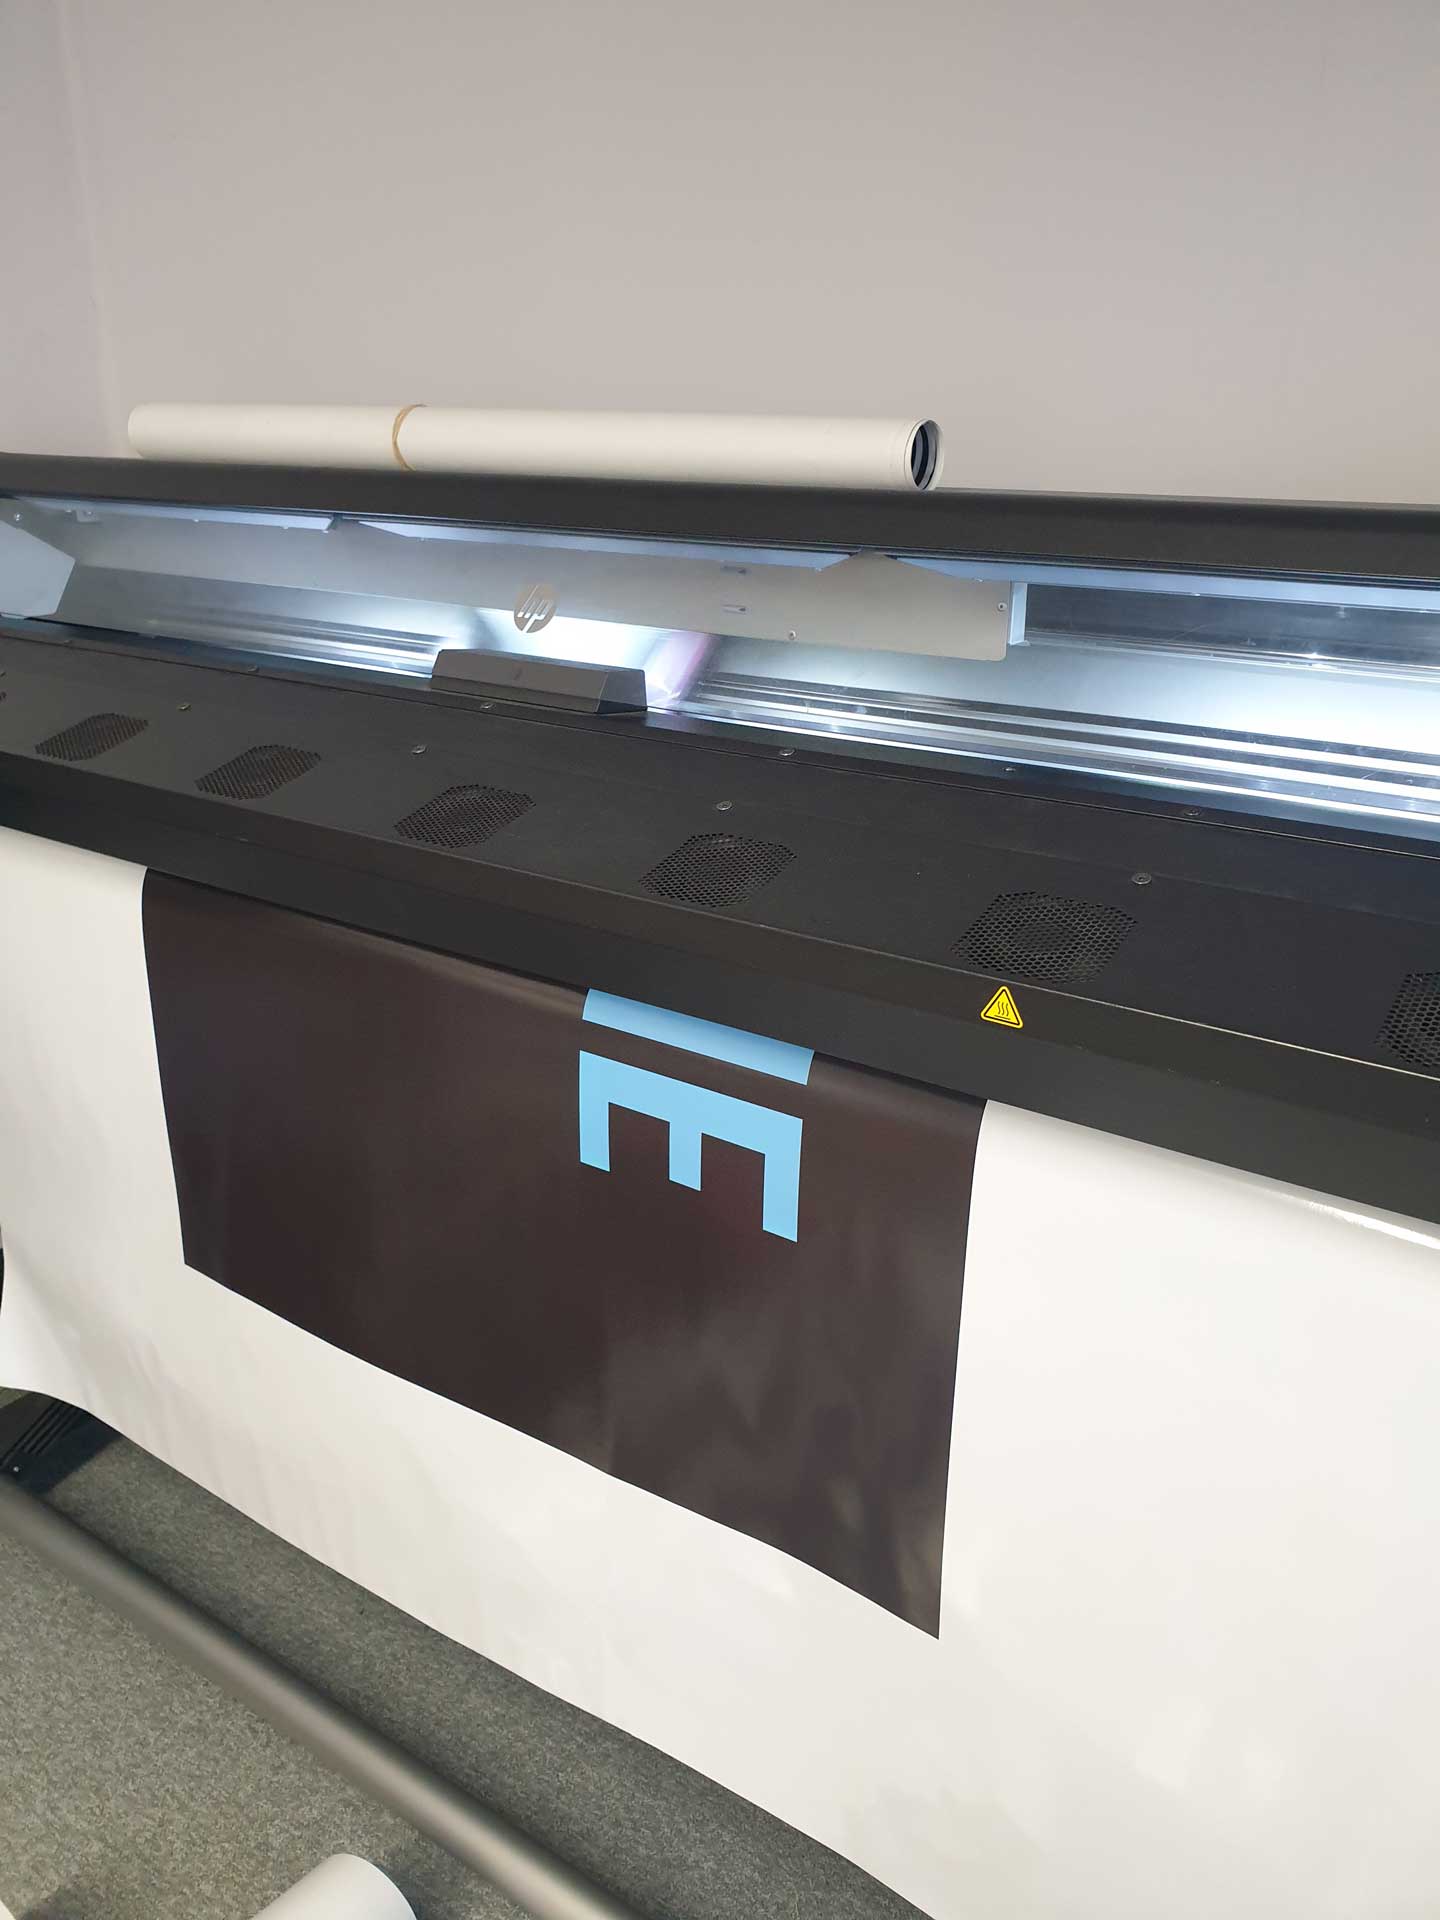 Latex printer hull